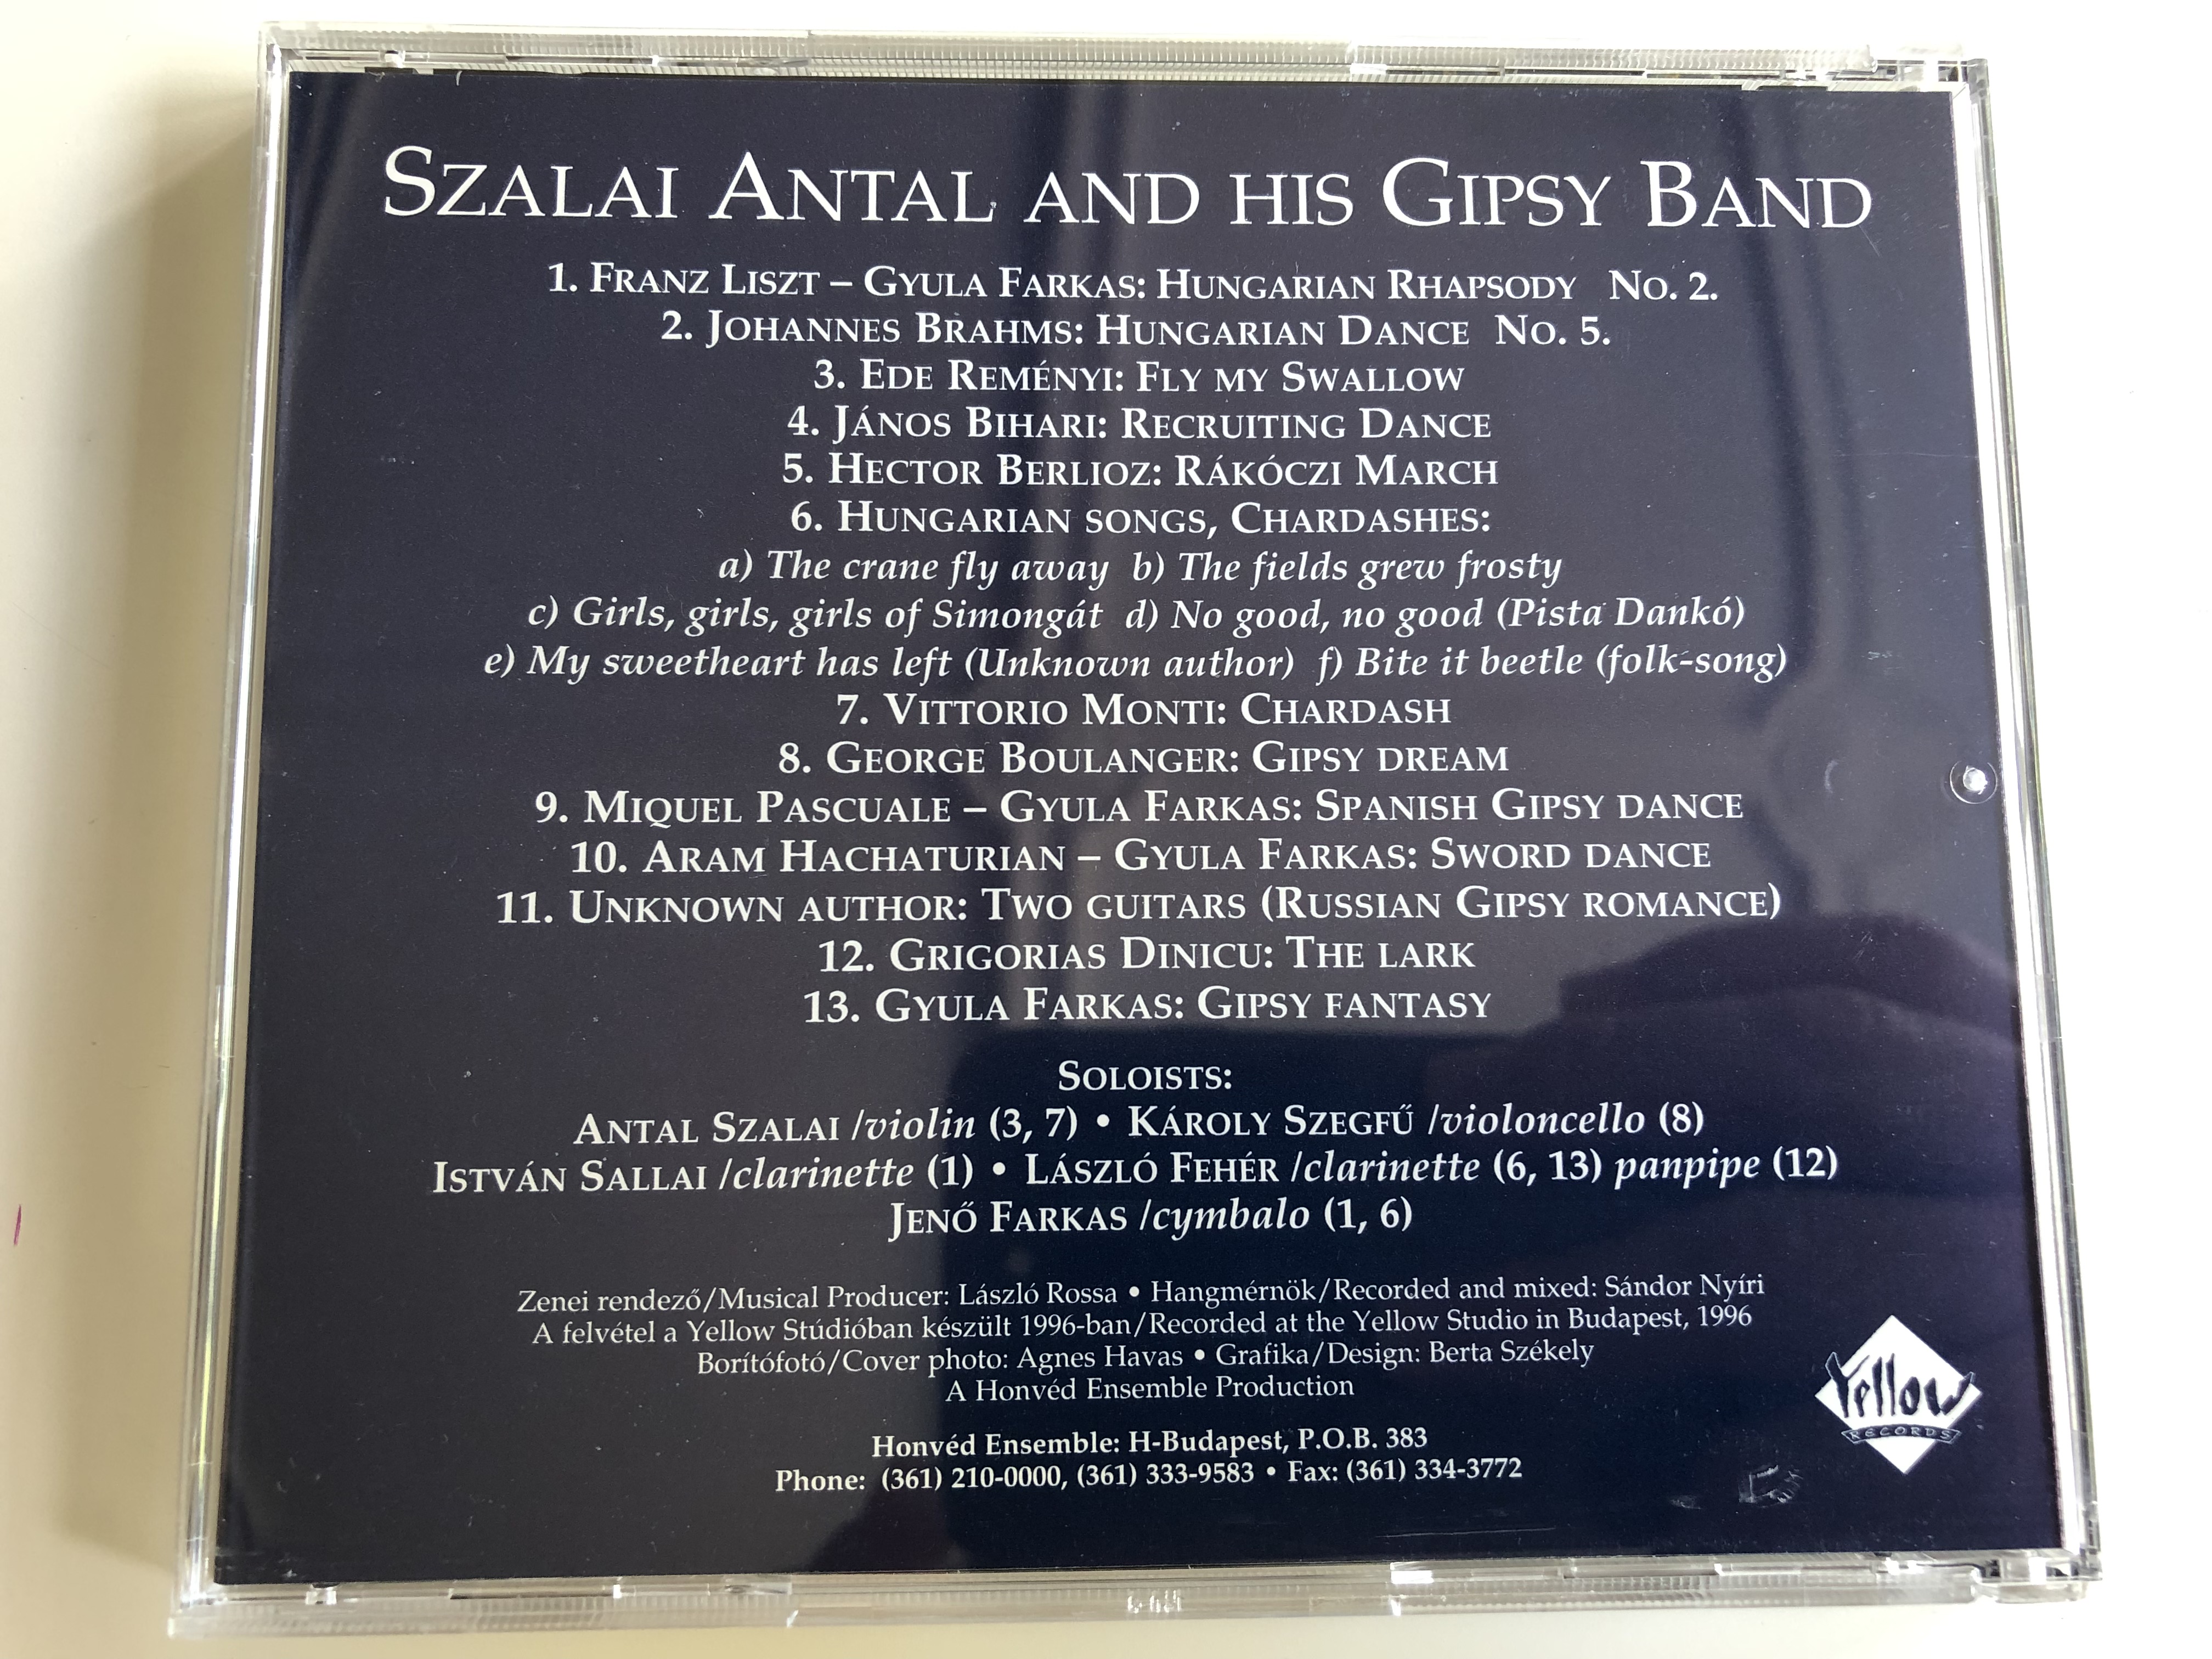 antal-szalai-and-his-gipsy-band-audio-cd-1996-honv-d-ensemble-budapest-6-.jpg